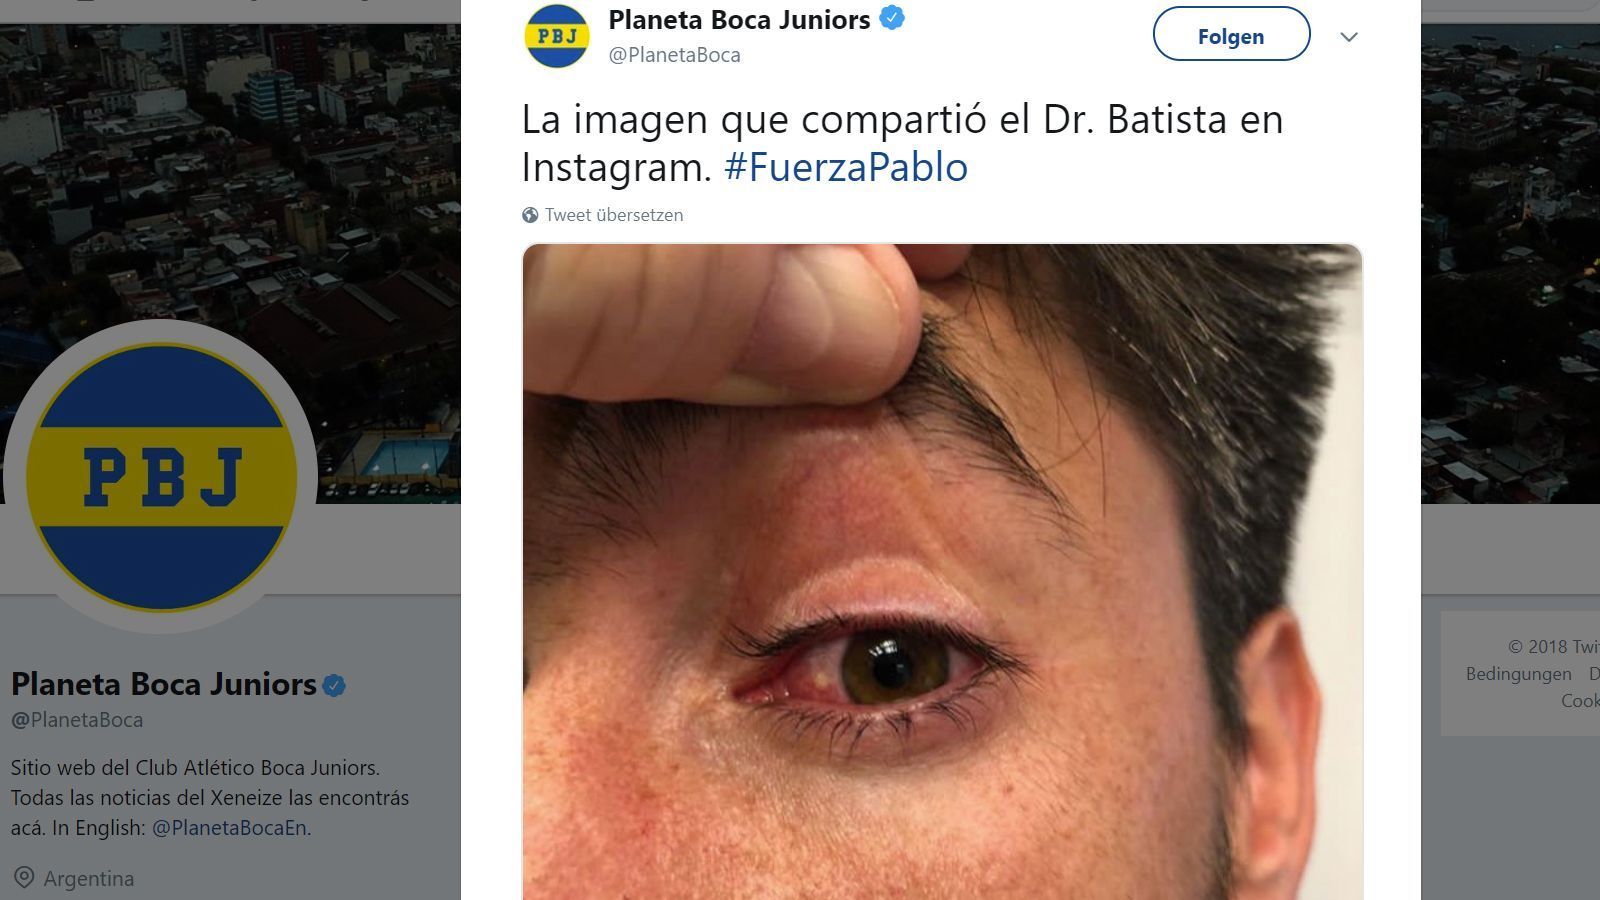 
                <strong>Boca-Kapitän erleidet Augenverletzung</strong><br>
                In der Folge wurde es immer bizarrer. Boca-Kapitän Pablo Perez wurde am Auge verletzt und wurde ins örtliche Krankenhaus gebracht. Kurze Zeit darauf kam die Order aus dem Stadion, dass der Spielführer für Untersuchungen der Verbandsärzte und für die Partie selbst zurückkehren muss.
              